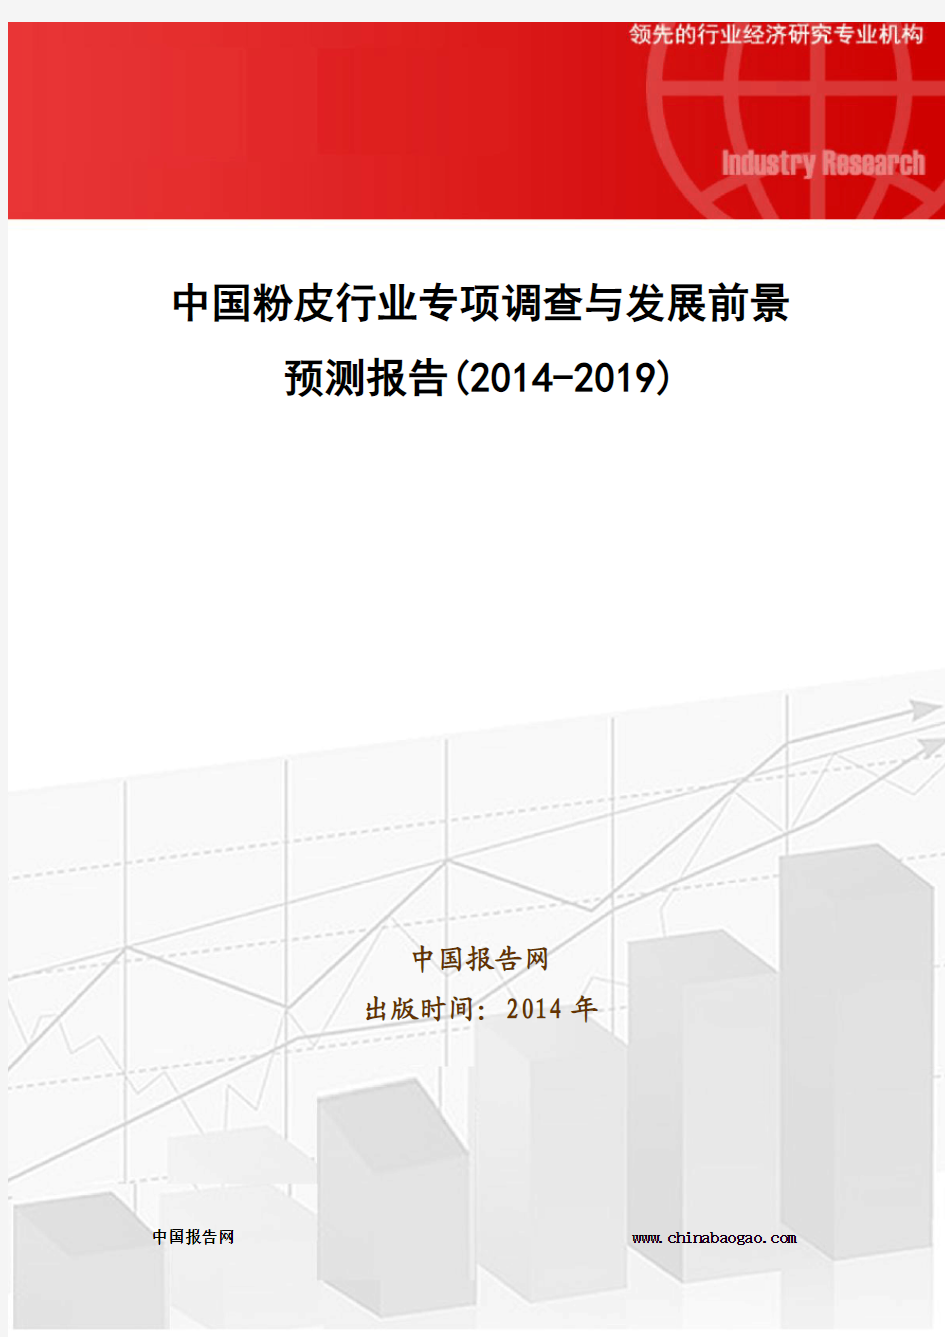 中国粉皮行业专项调查与发展前景预测报告(2014-2019)